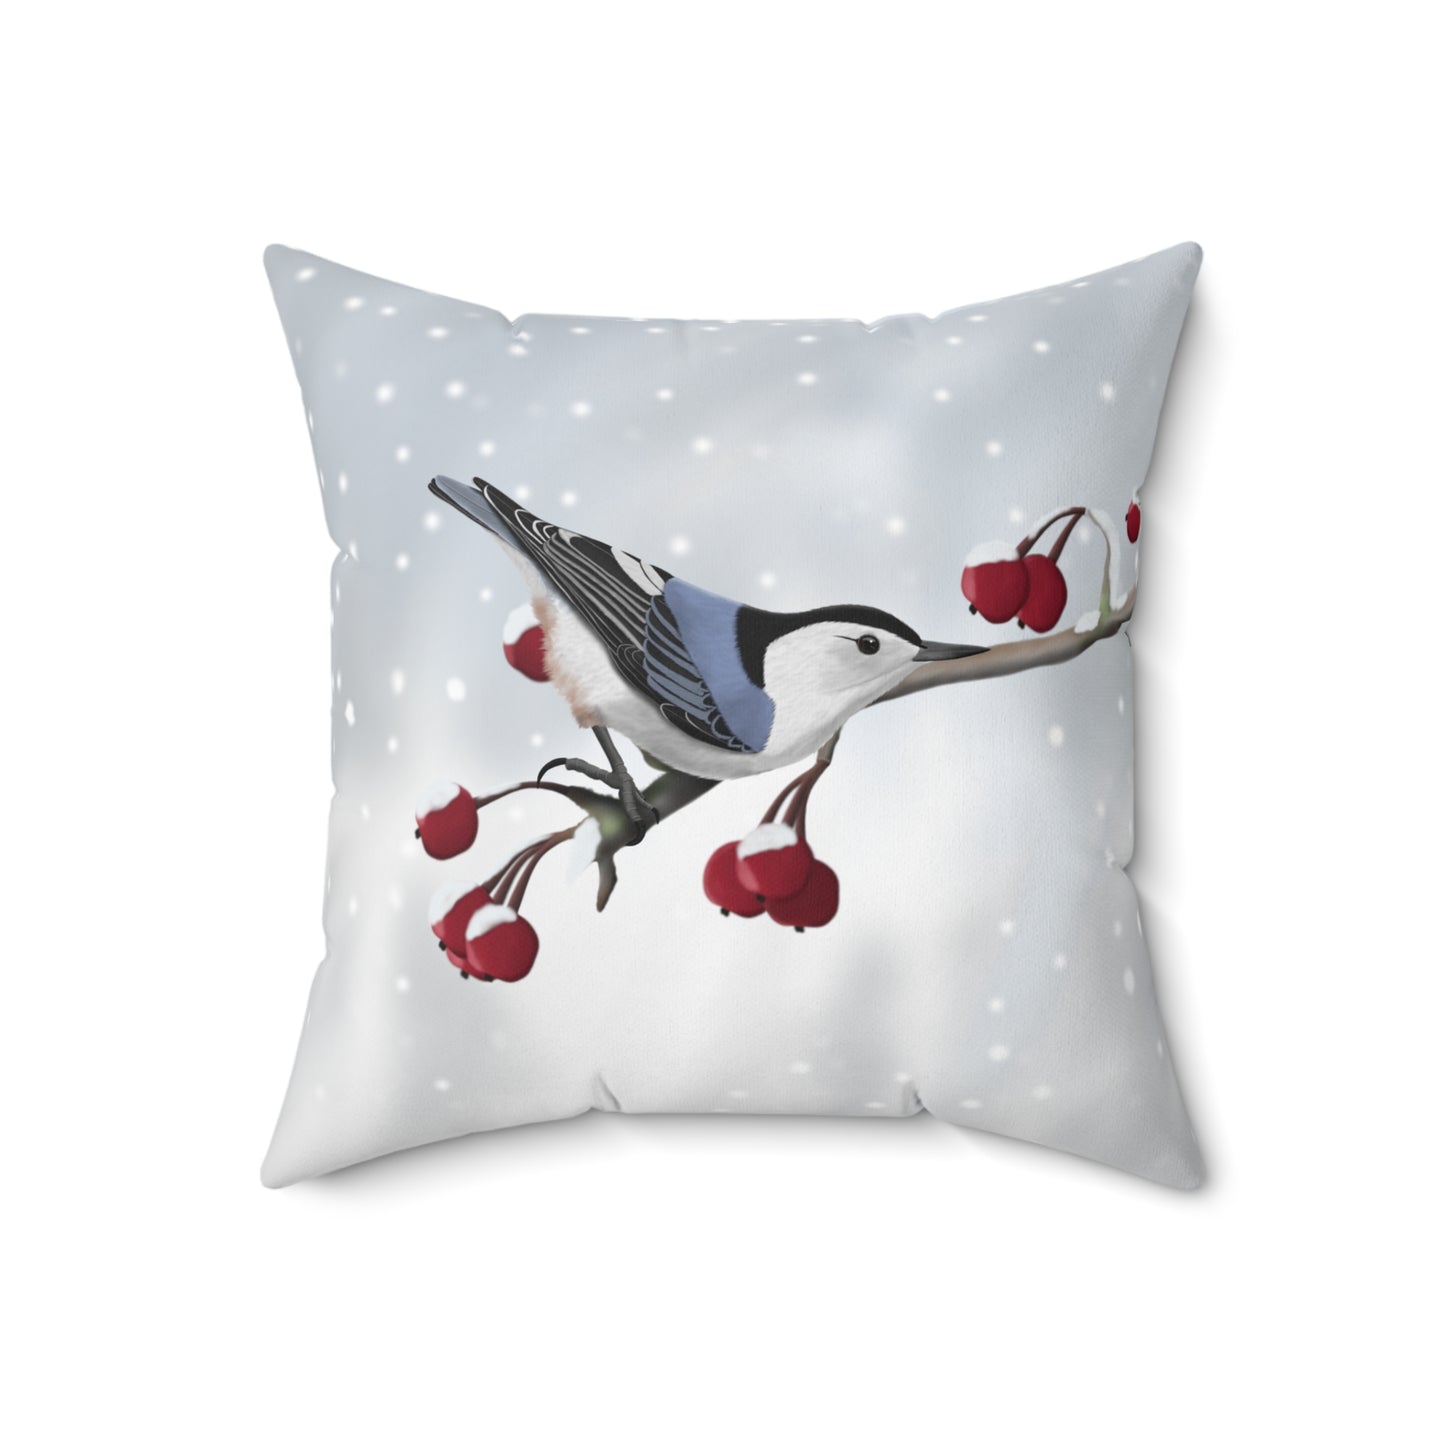 Nuthatch on a Winter Branch Bird Throw Pillow 16"x16"